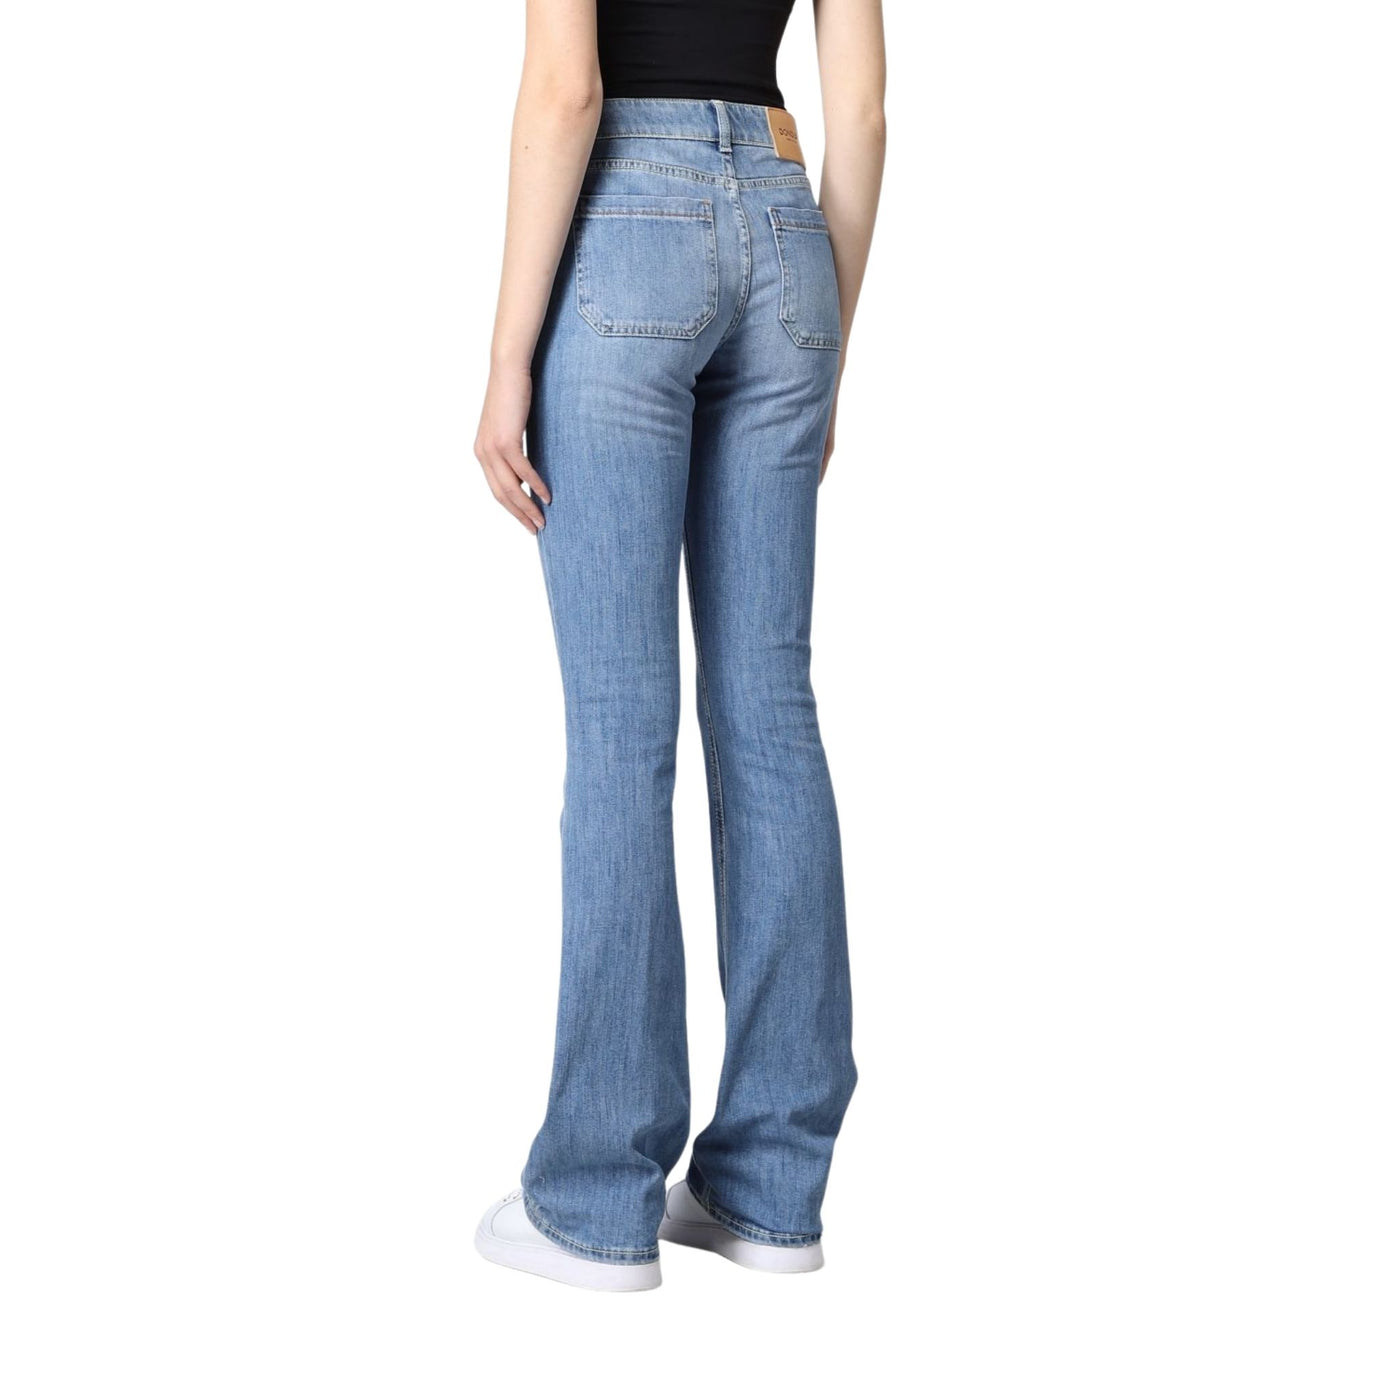 Jeans da donna denim firmato Dondup su modella vista retro